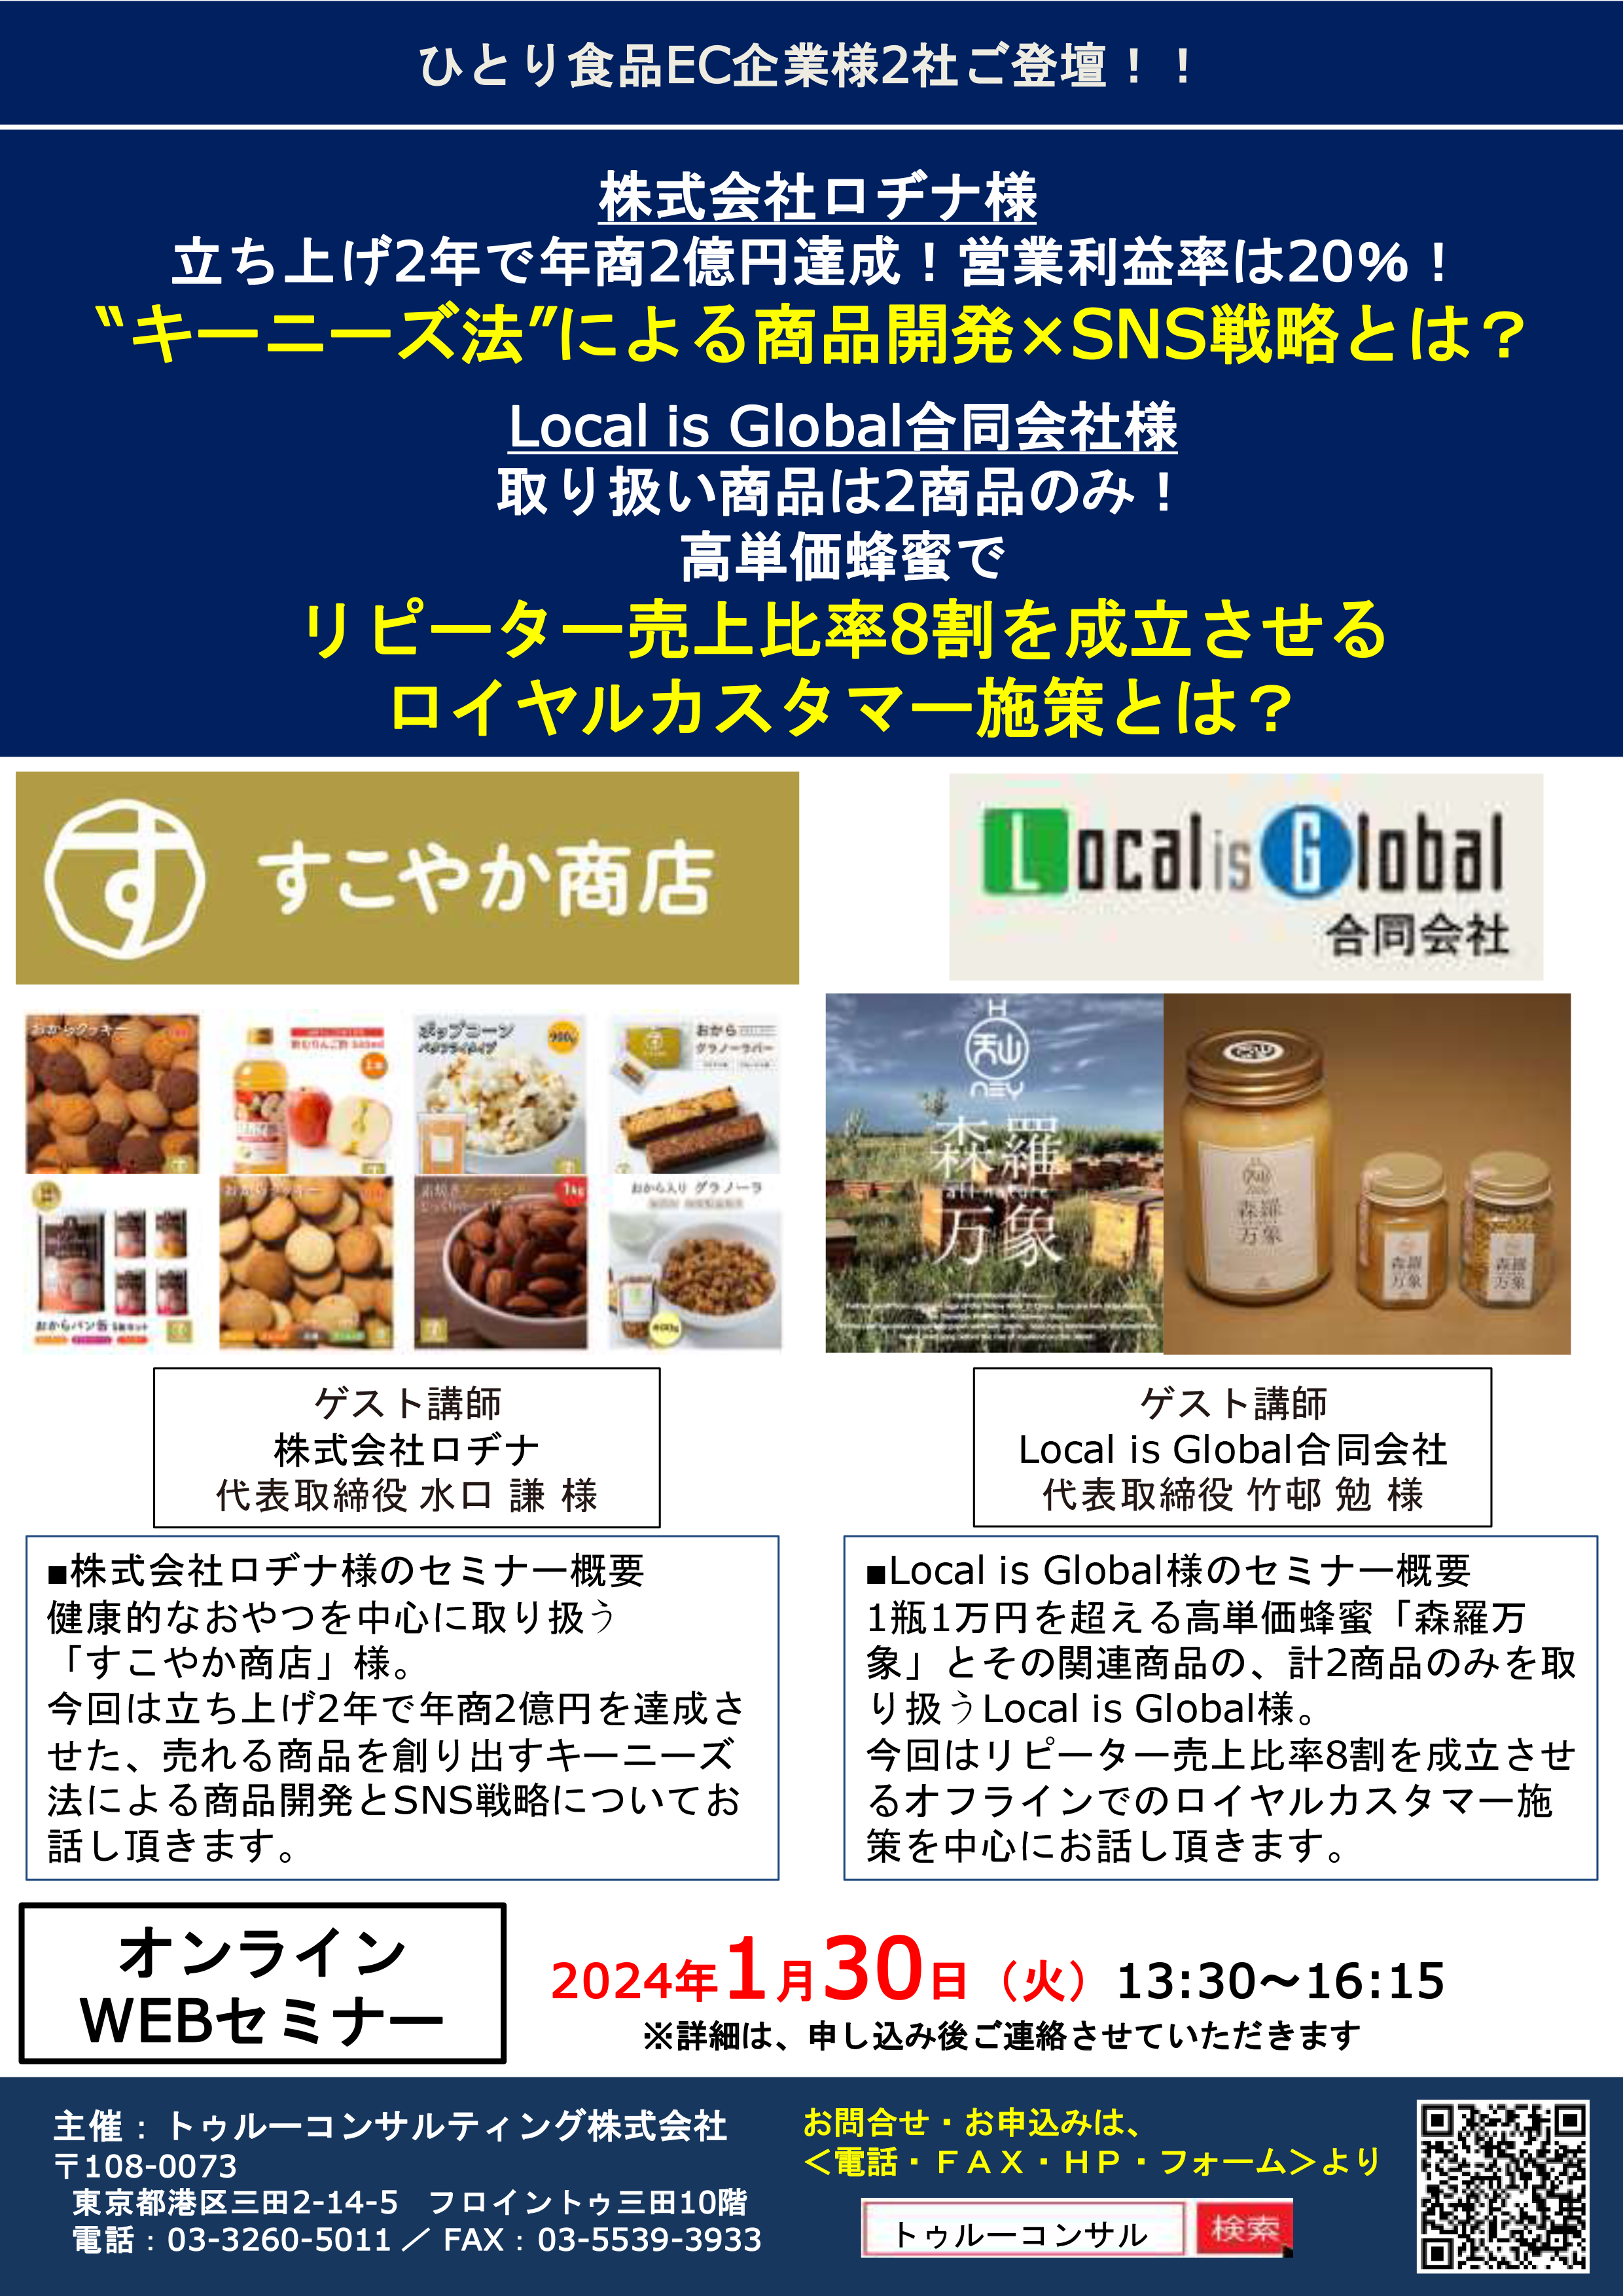 株式会社ロヂナ様 ＆ Local is Global合同会社様 ゲスト講演セミナー